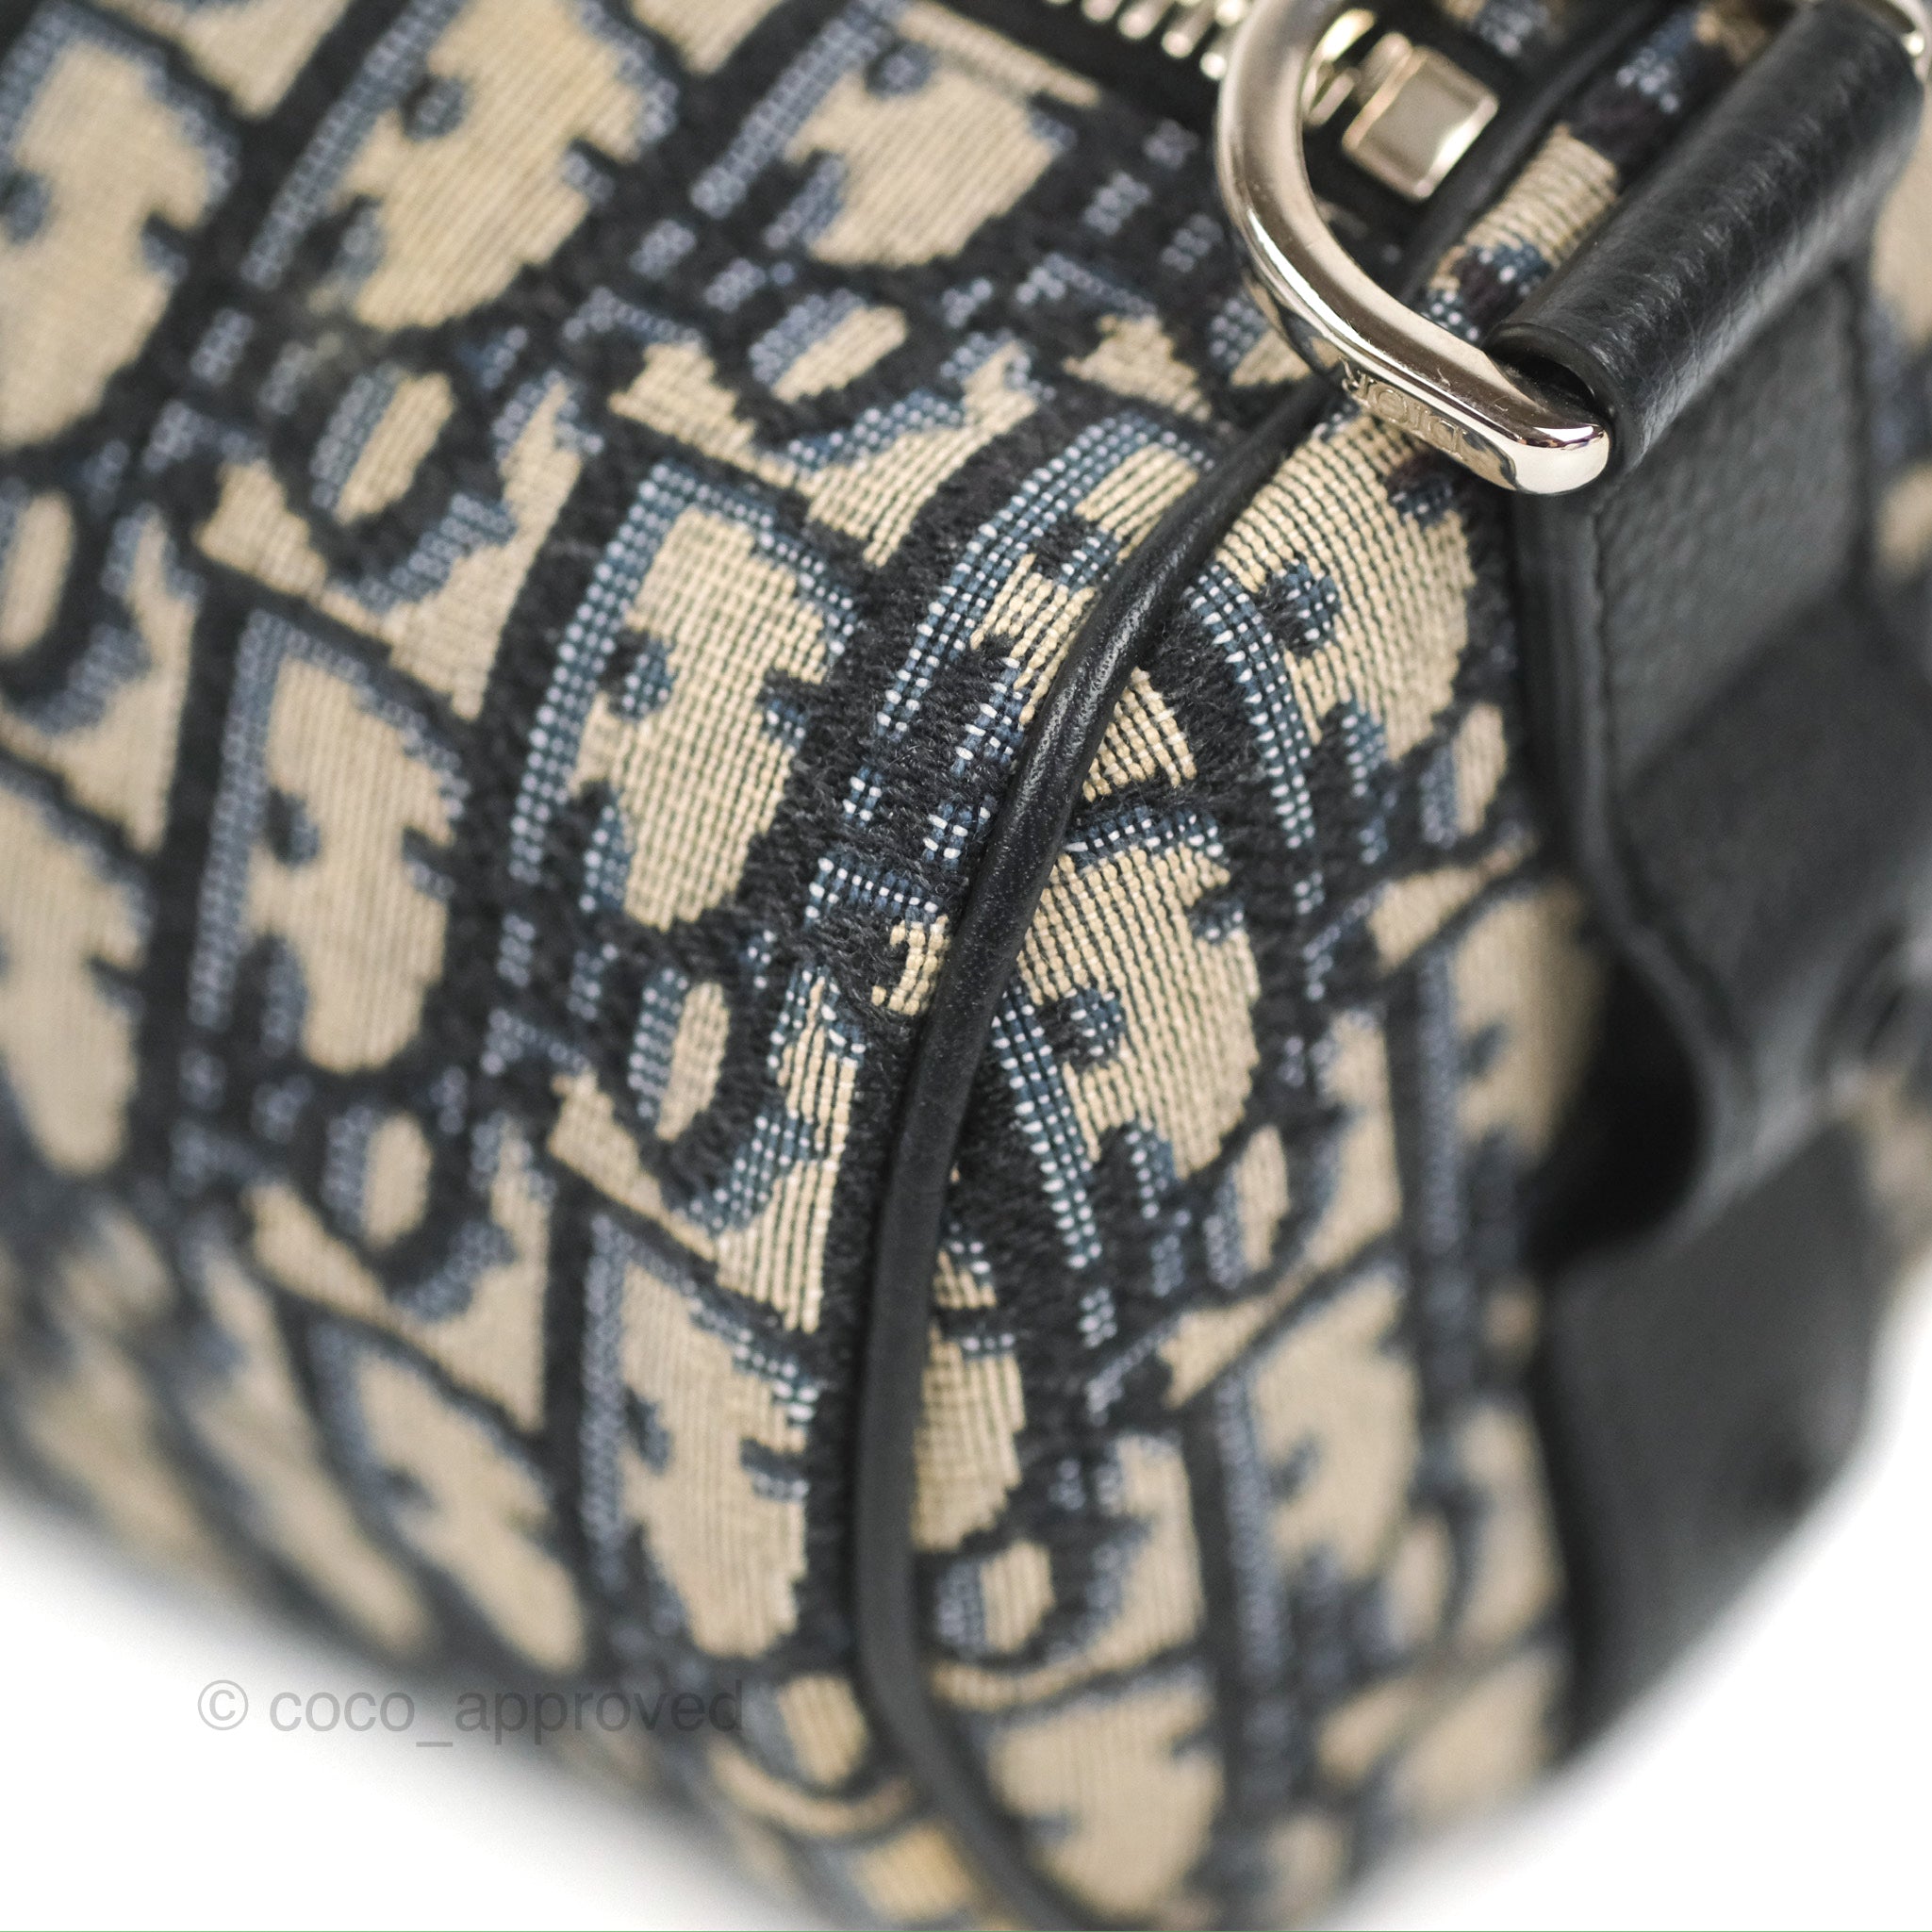 Dior Men's Messenger Bag #999934426 